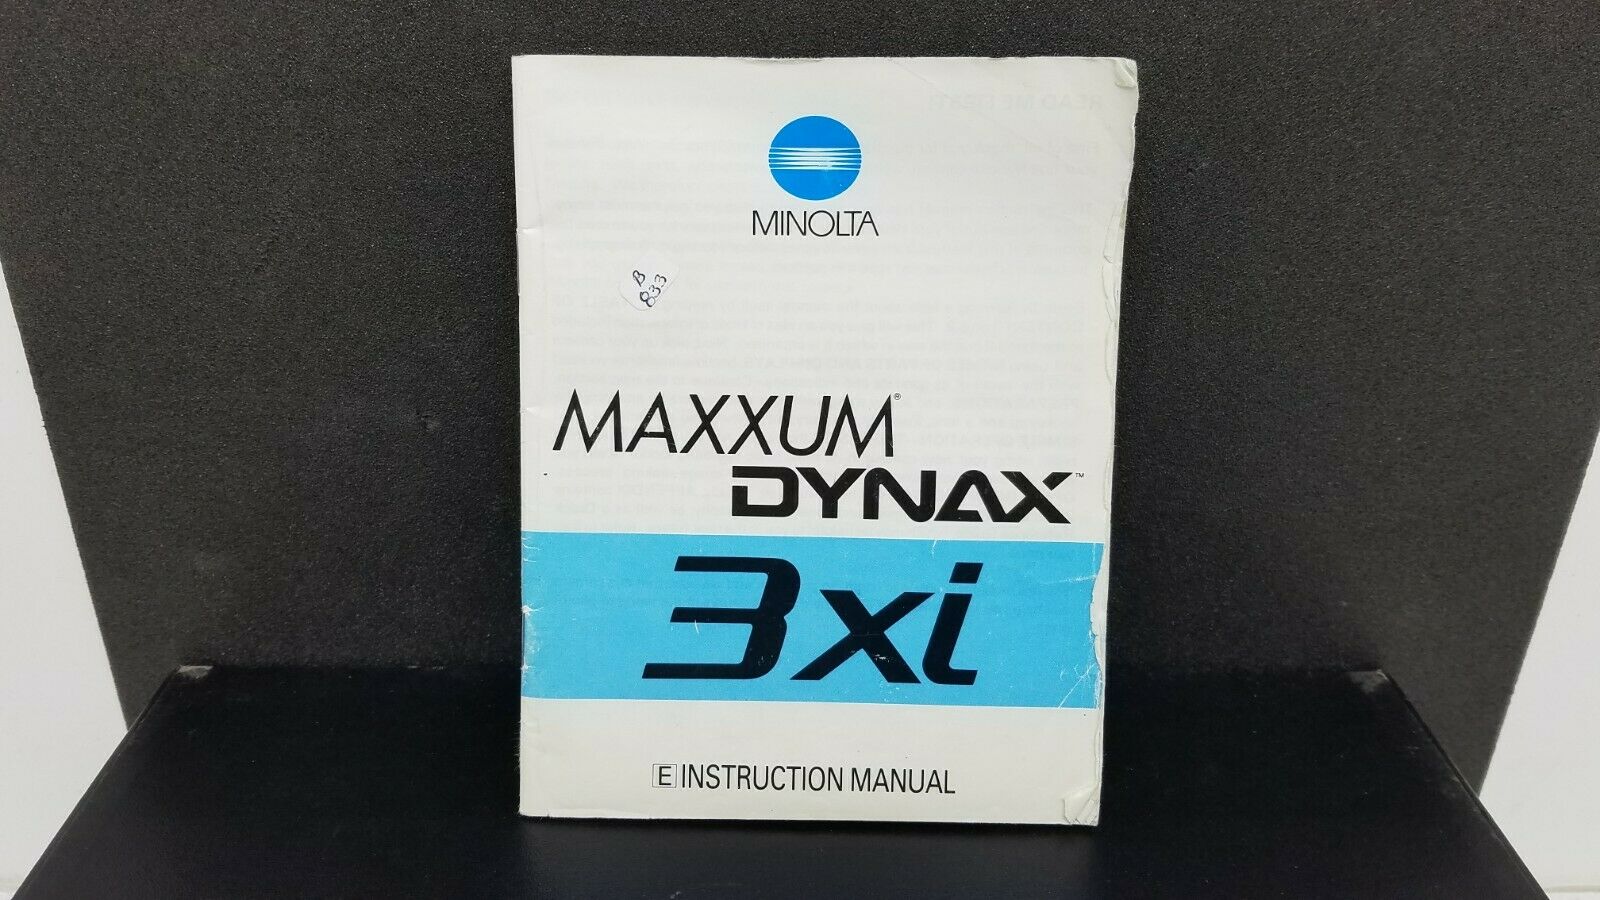 ORIGINAL Minolta MAXXUM DYNAX 3xi camera Owner's Operating Manual Instructions